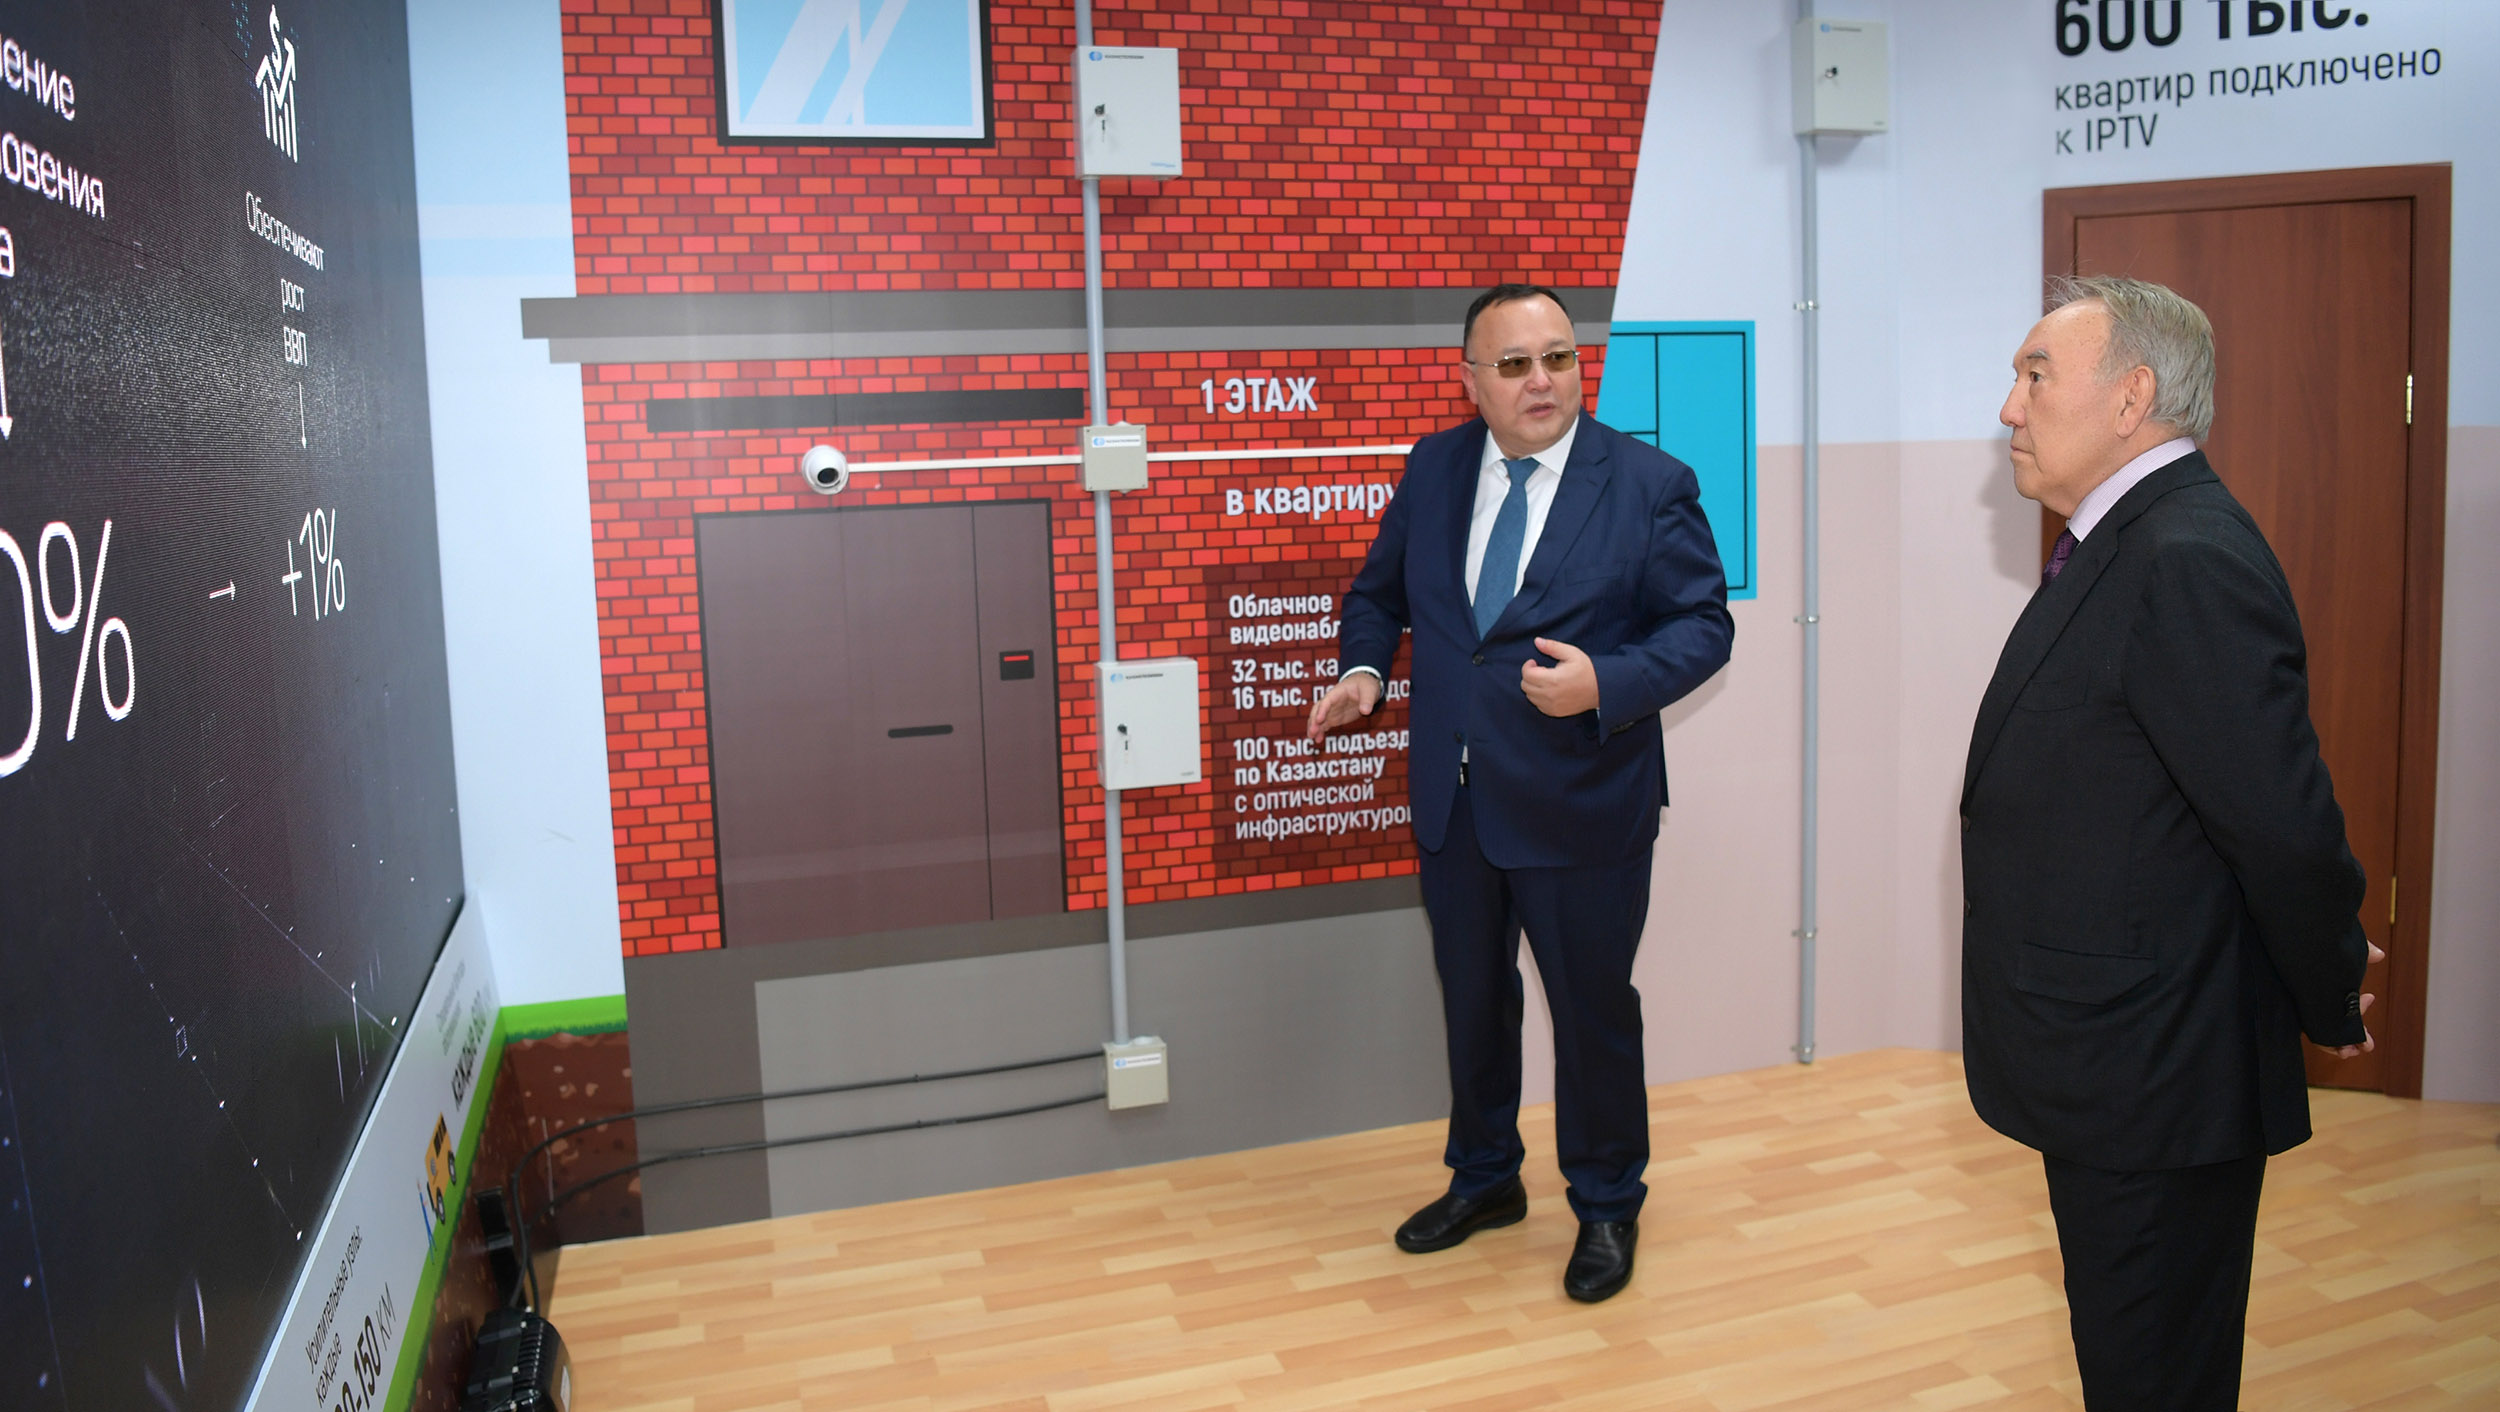 Нурсултан Назарбаев посетил Центр обработки данных АО «Казахтелеком» в Акколе